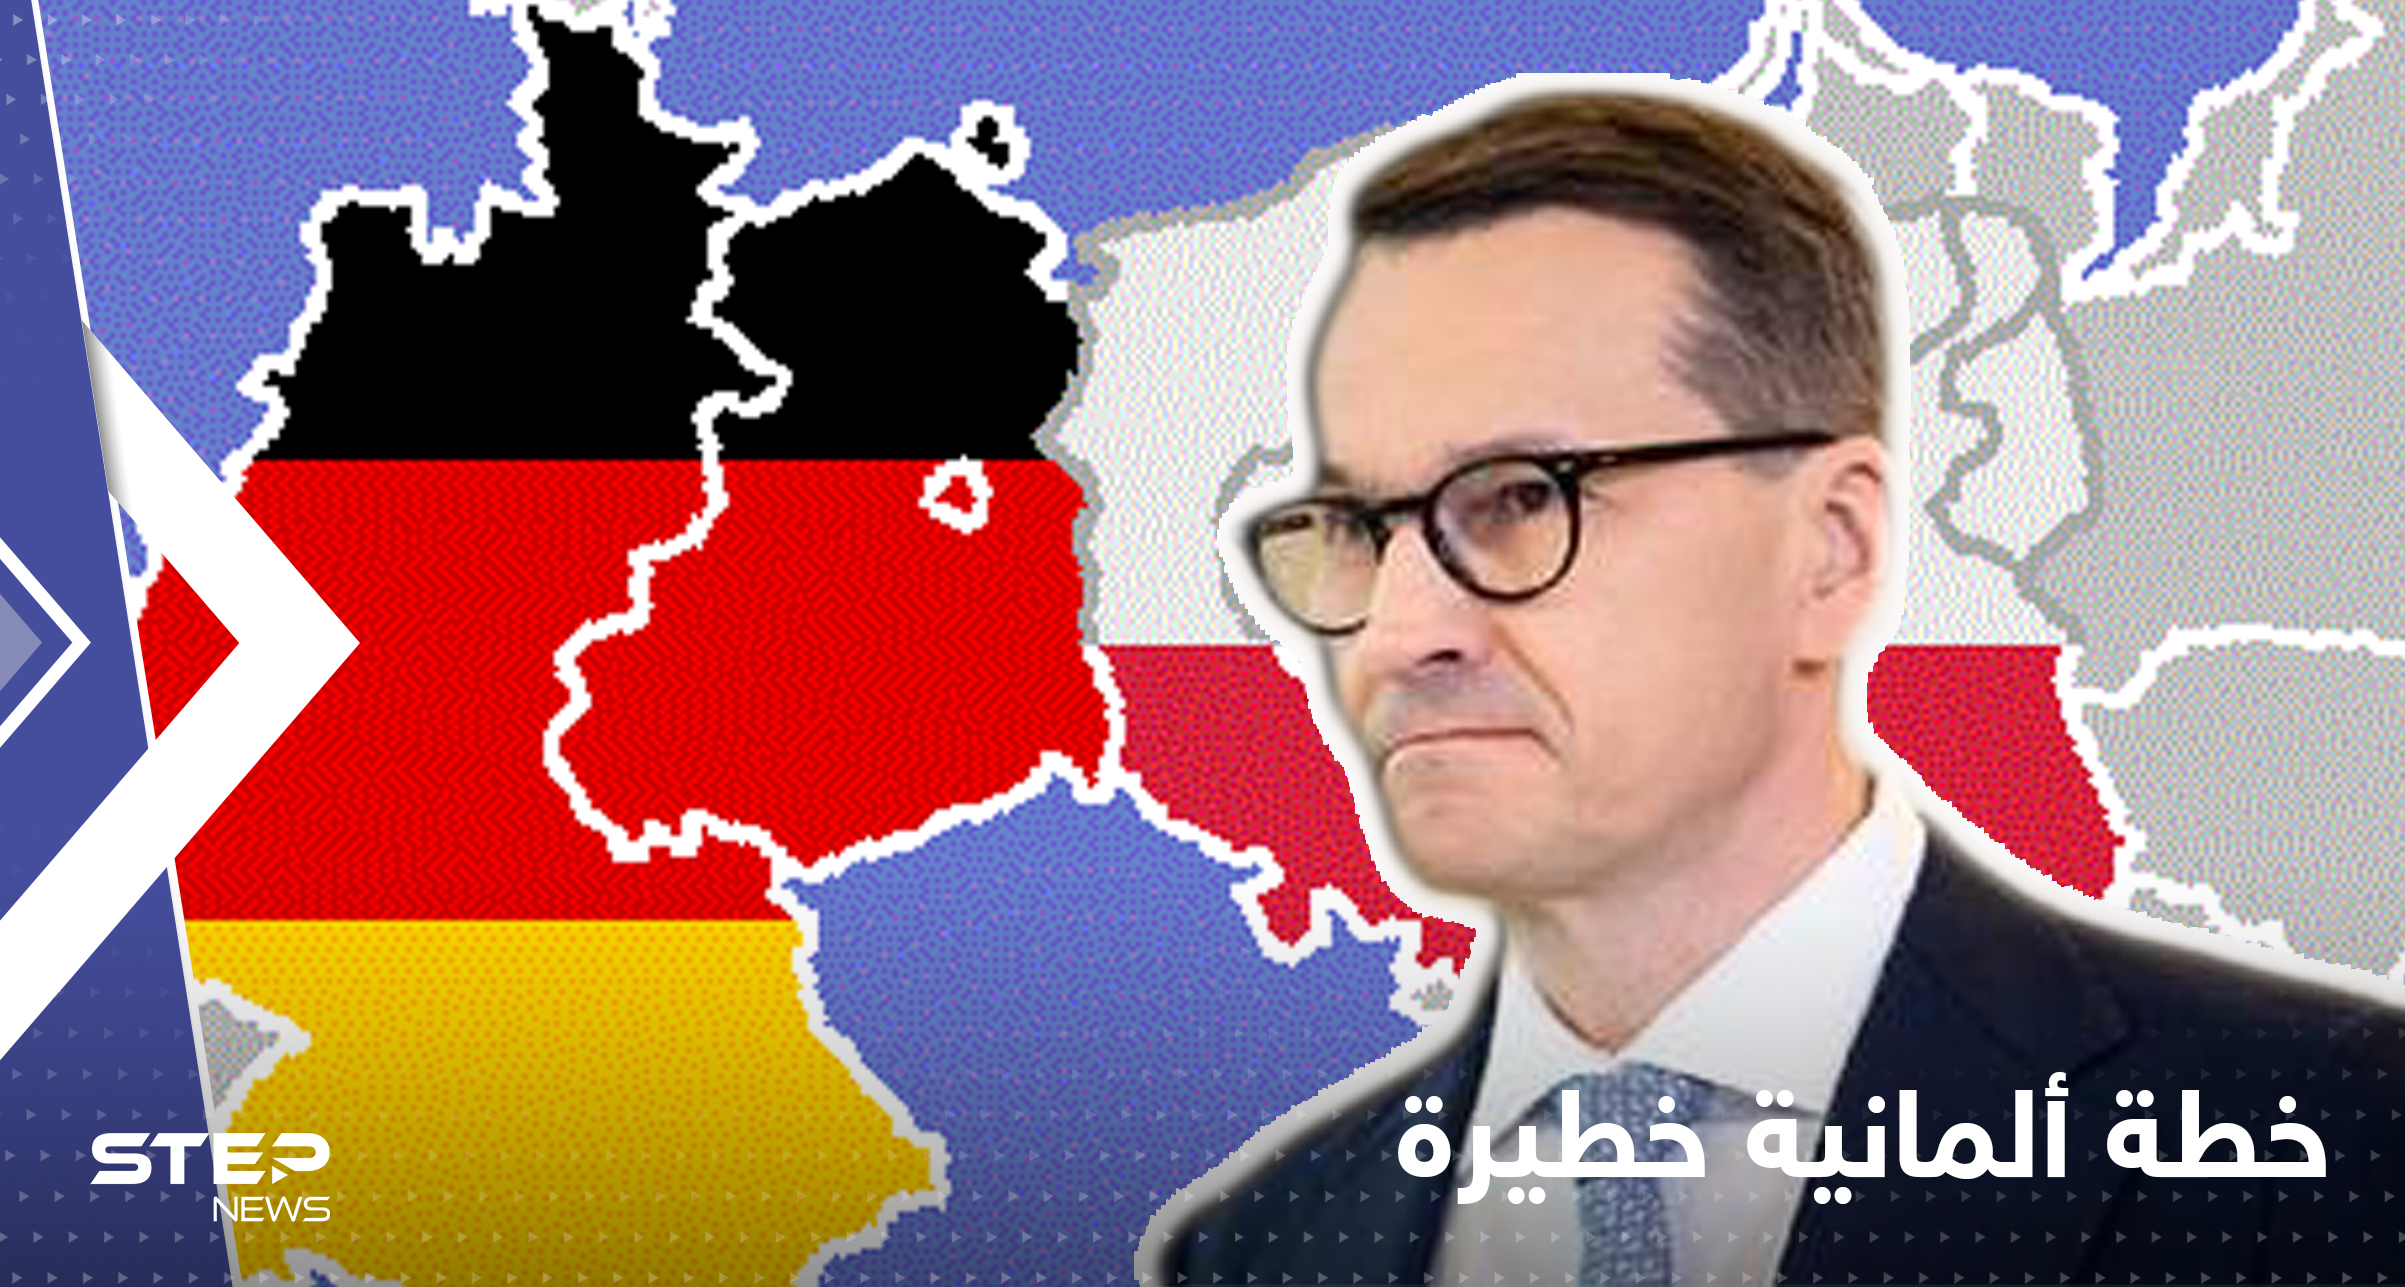 مسؤول يكشف خطة ألمانية قد تشعل أوروبا بالصراعات إذا تحقق شرط العام المقبل